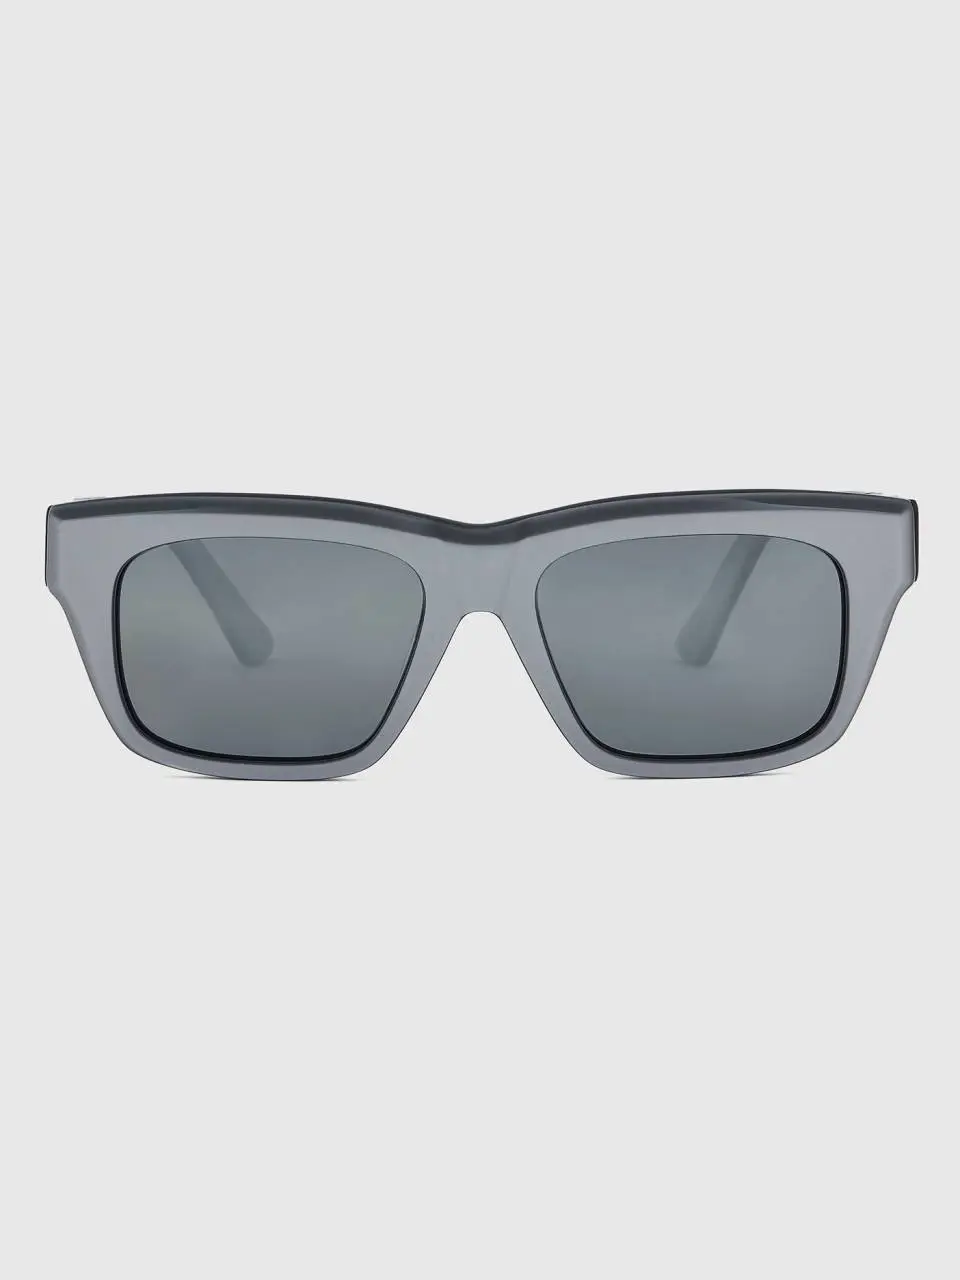 Benetton silver sunglasses. 1